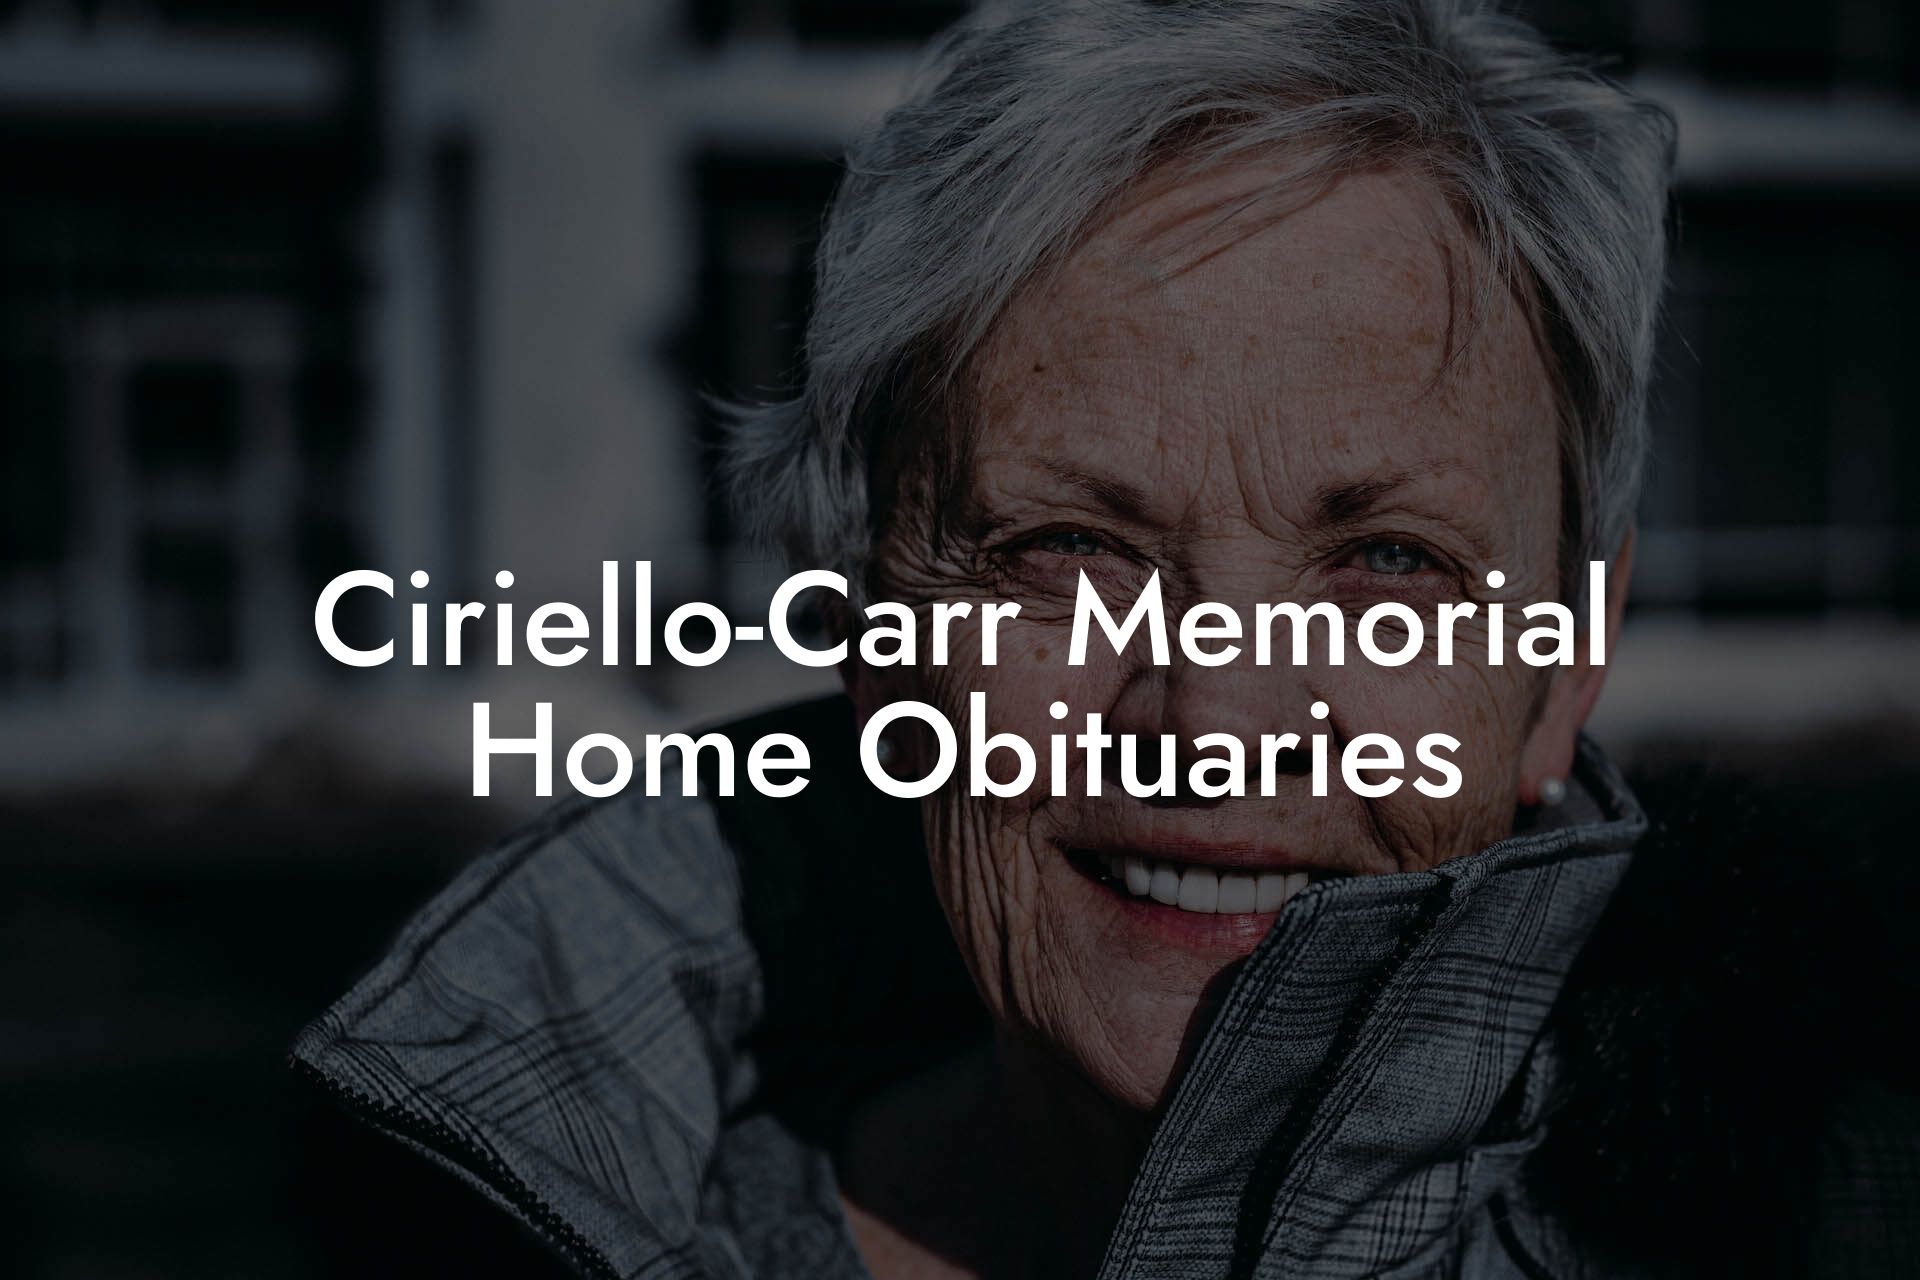 Ciriello-Carr Memorial Home Obituaries